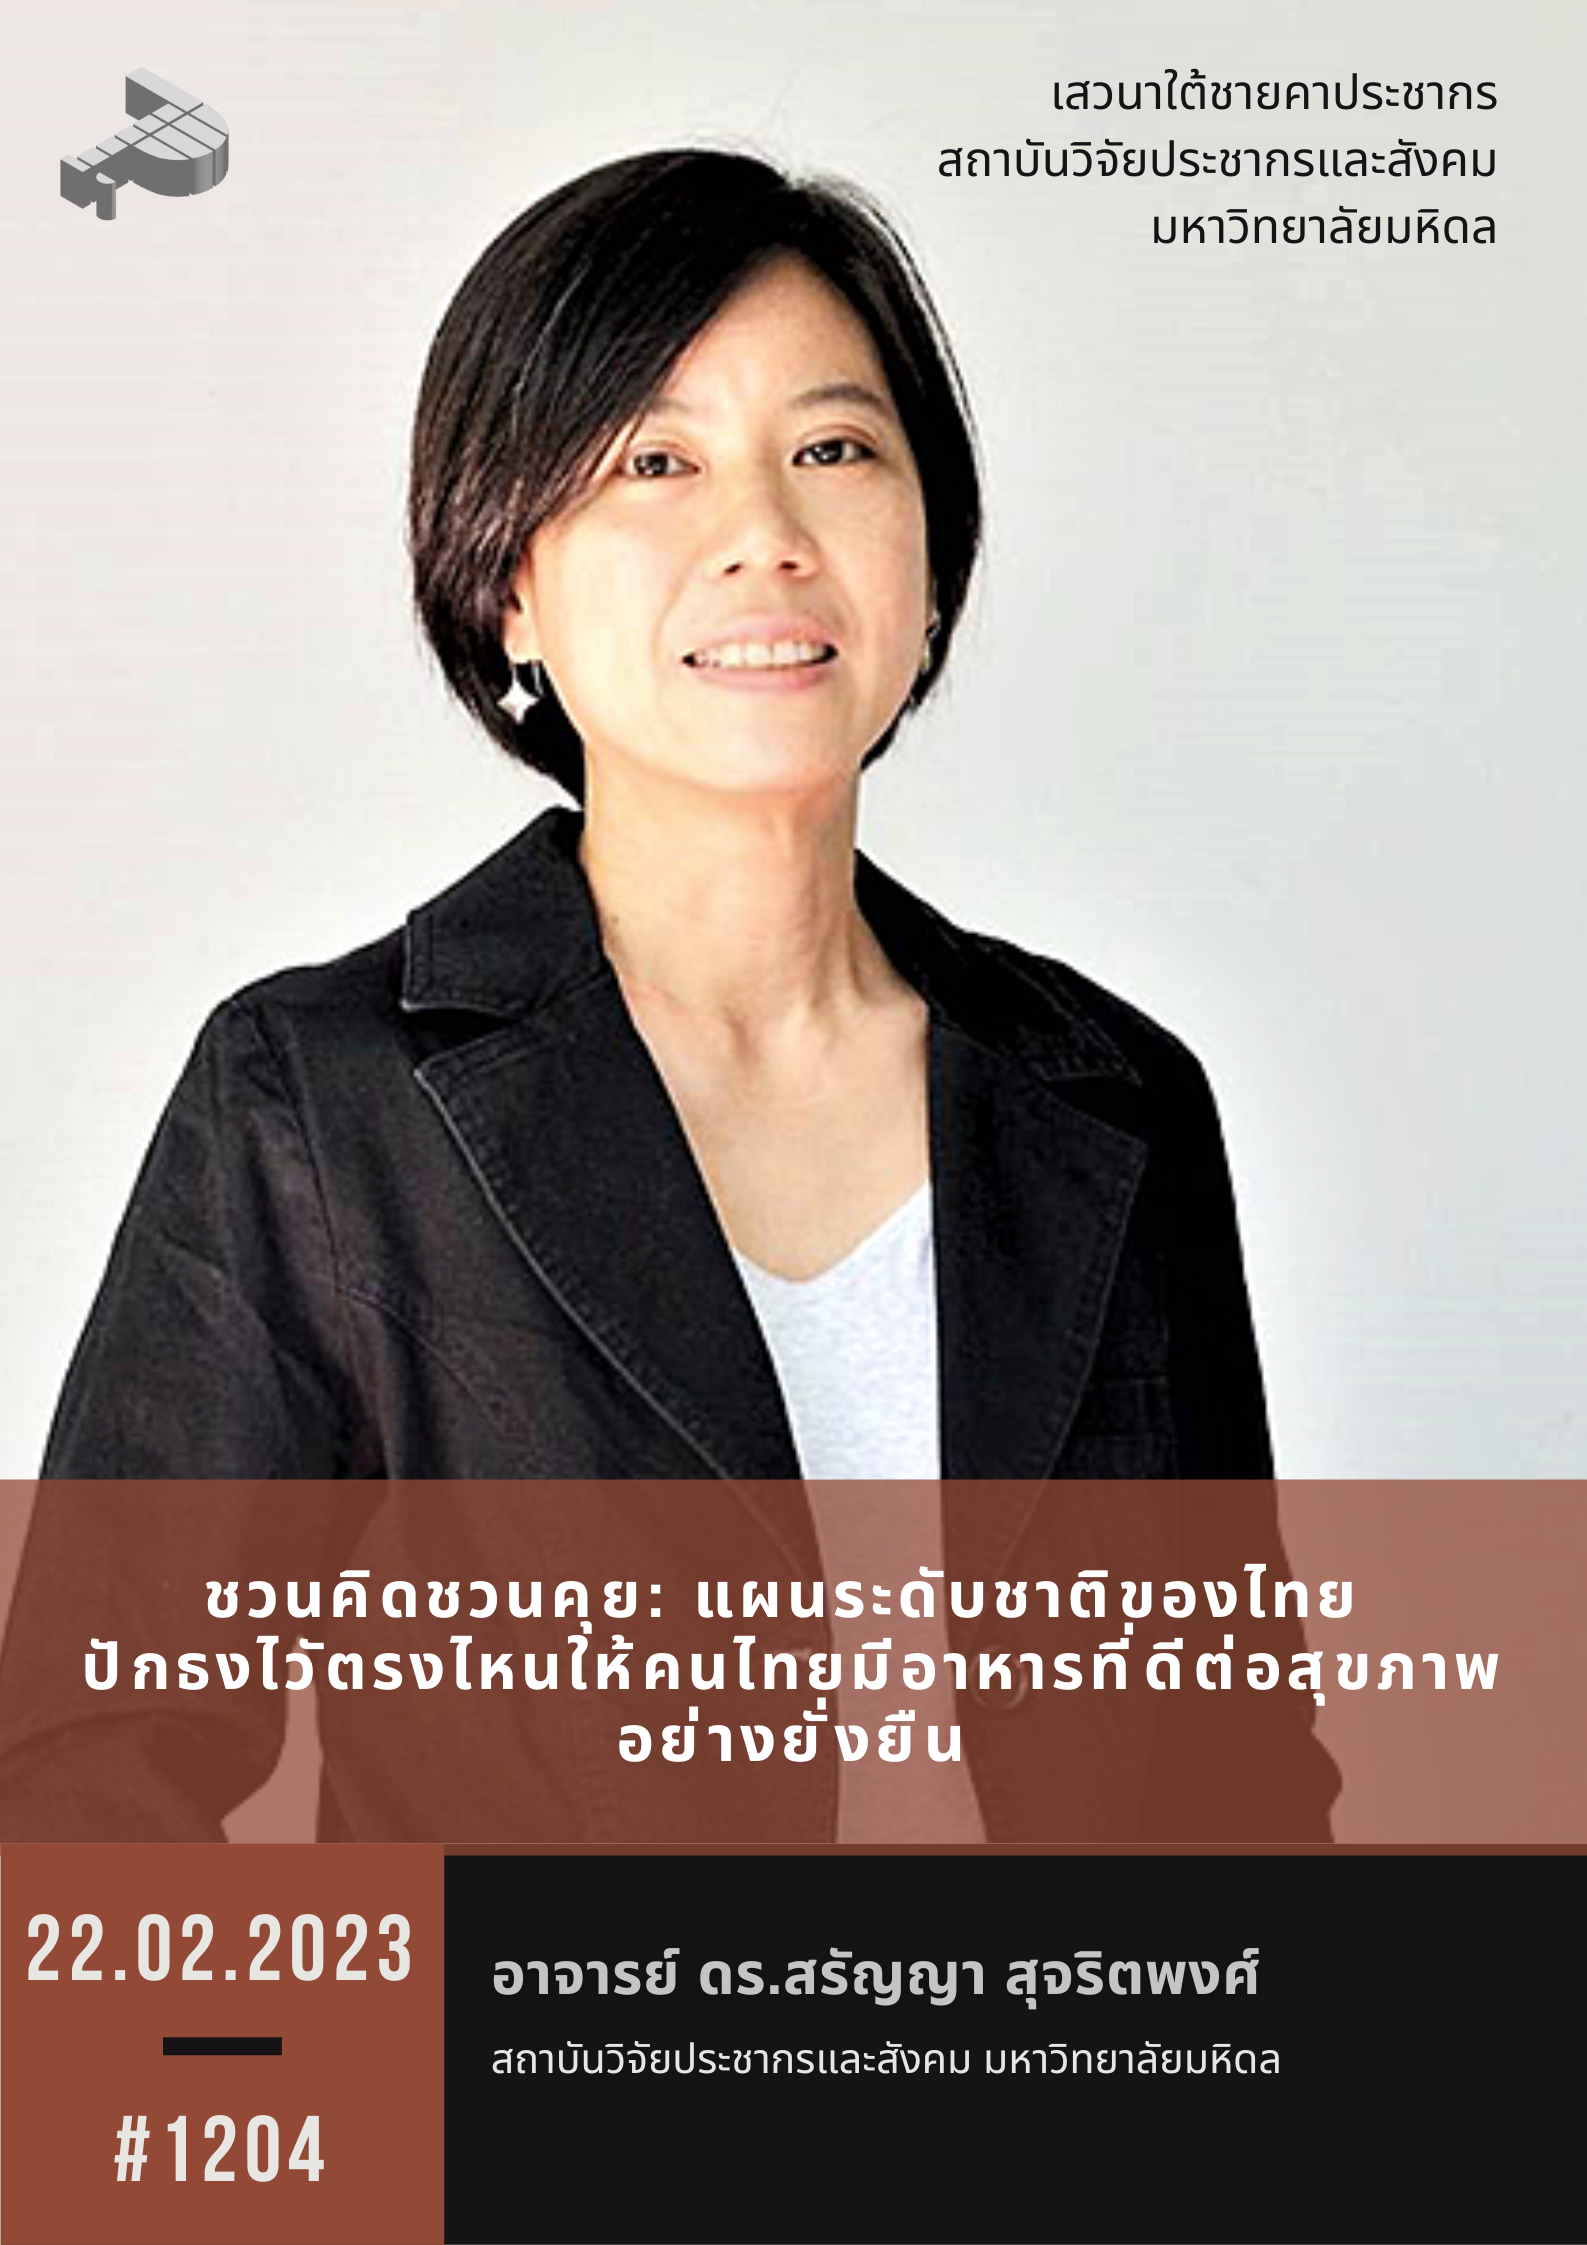 ชวนคิดชวนคุย: แผนระดับชาติของไทย ปักธงไวัตรงไหนให้คนไทยมีอาหารที่ดีต่อสุขภาพอย่างยั่งยืน